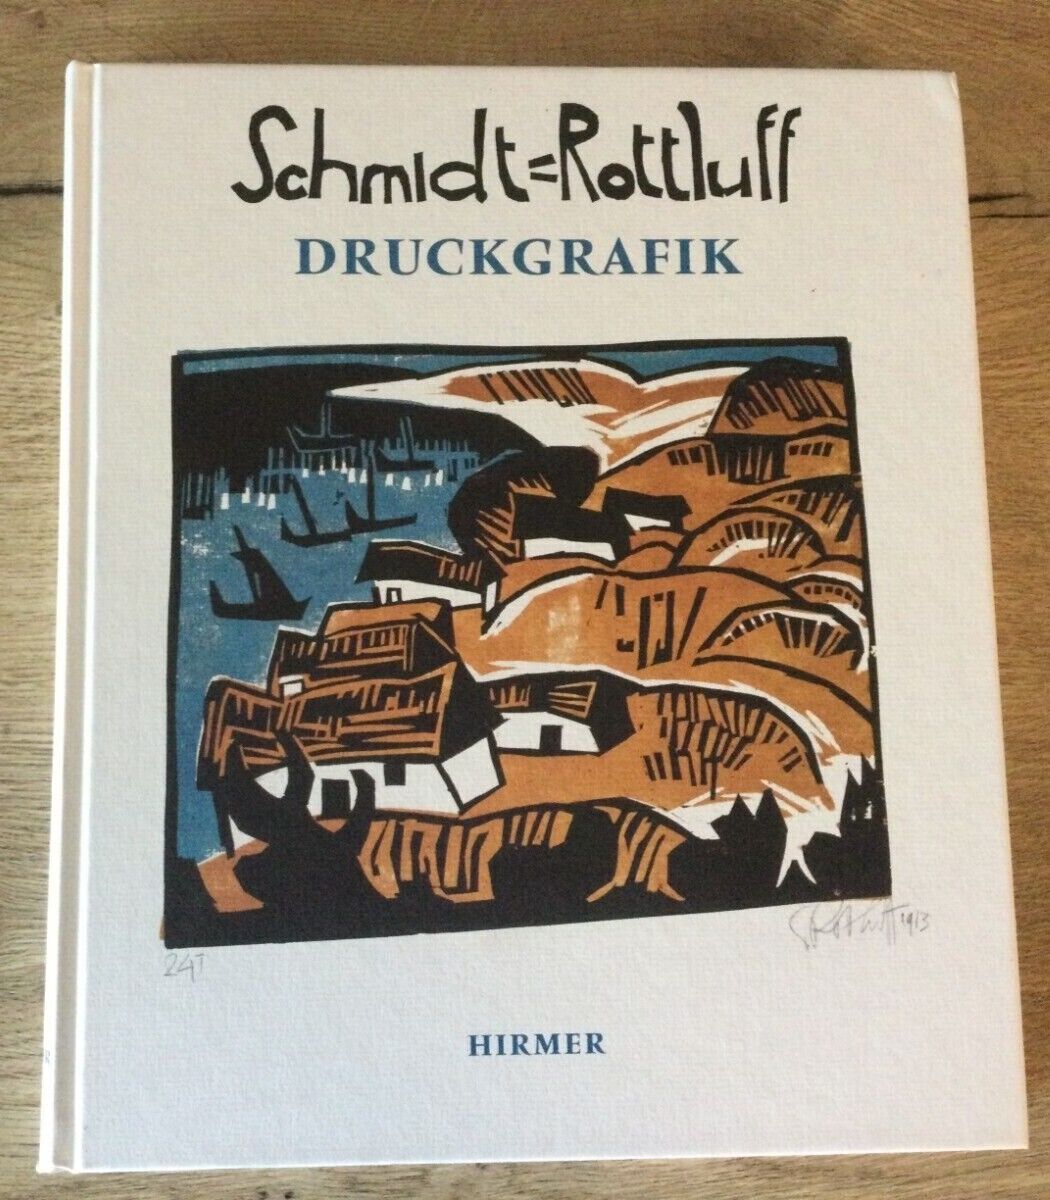 Magdalena M. Moeller, Karl Schmidt-Rottluff, Druckgrafik, 2001, 198 S.